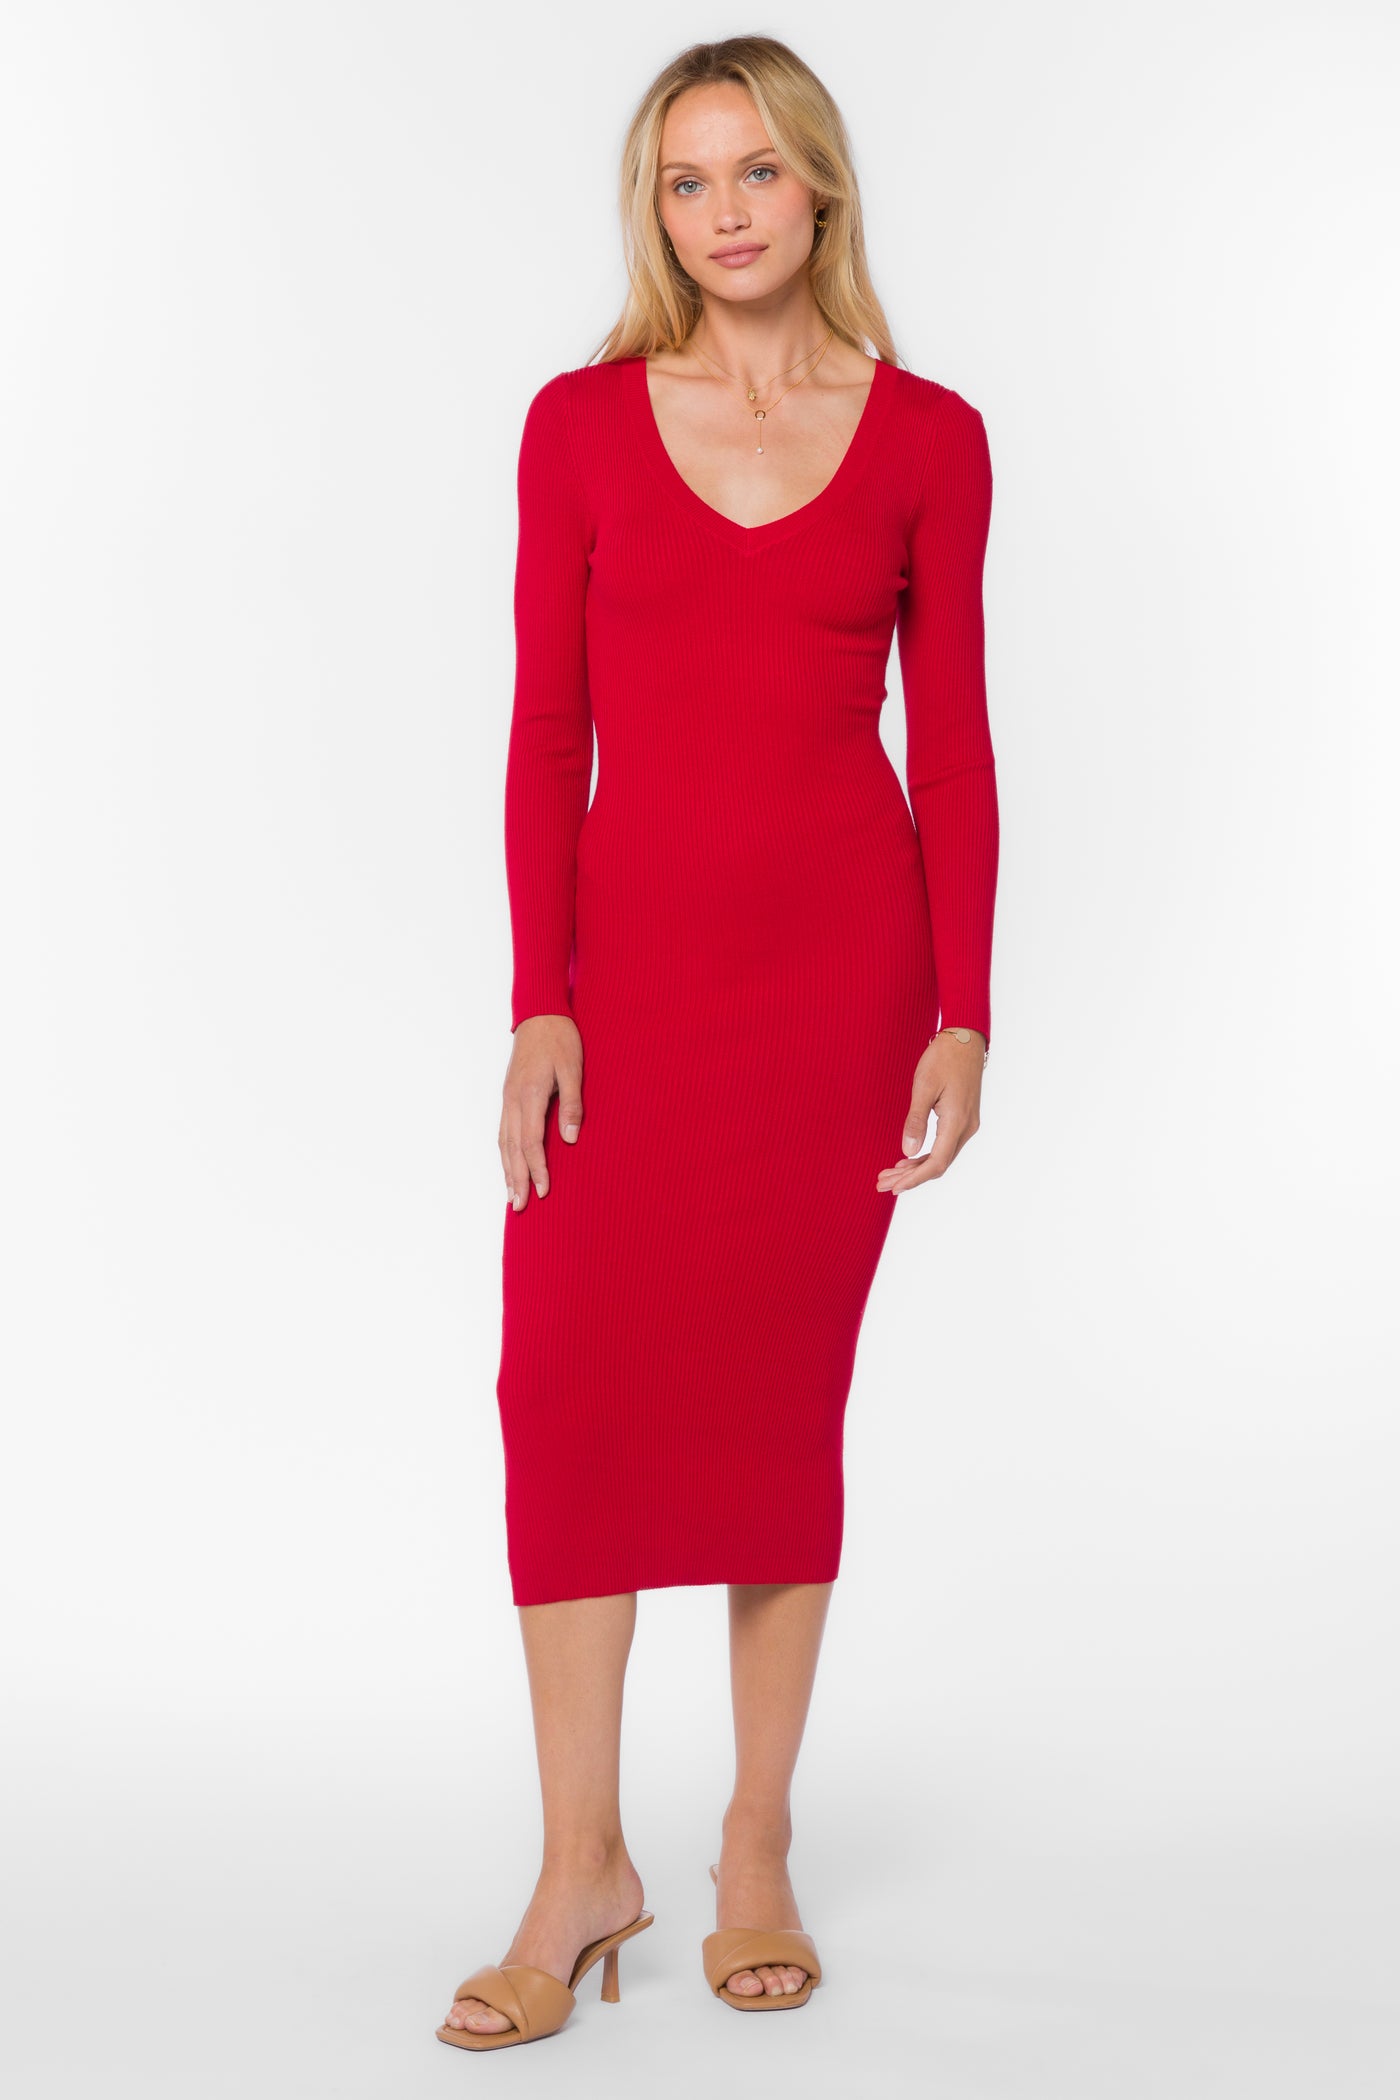 Rasha Red Pepper Dress - Dresses - Velvet Heart Clothing